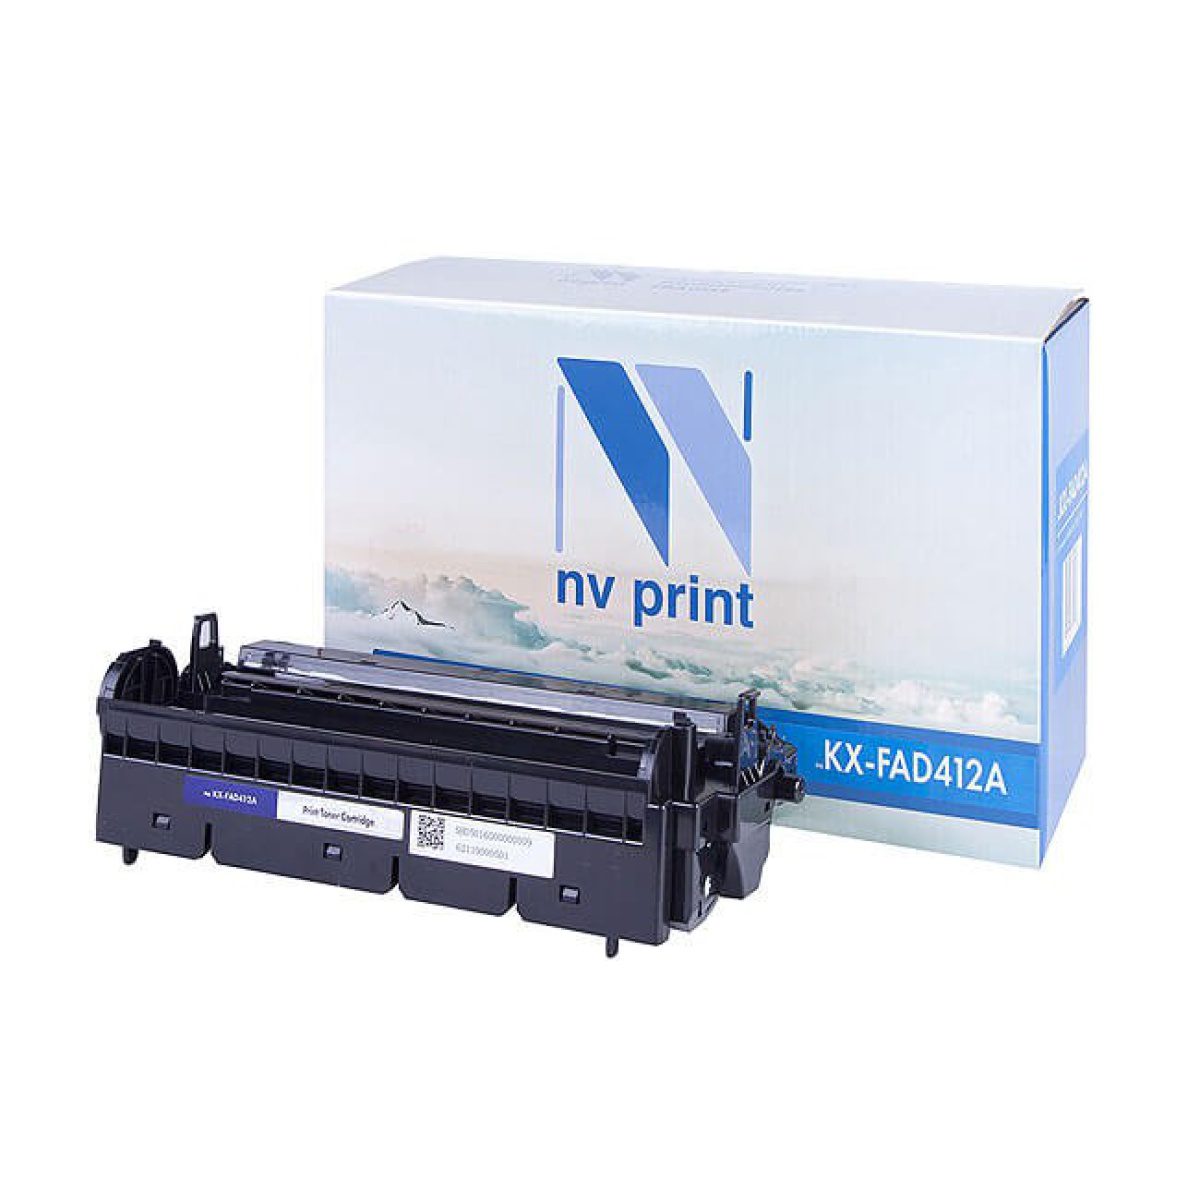 Купить фотобарабан NV Print KX-FAD412A черный по адекватной цене — Digit-Mall